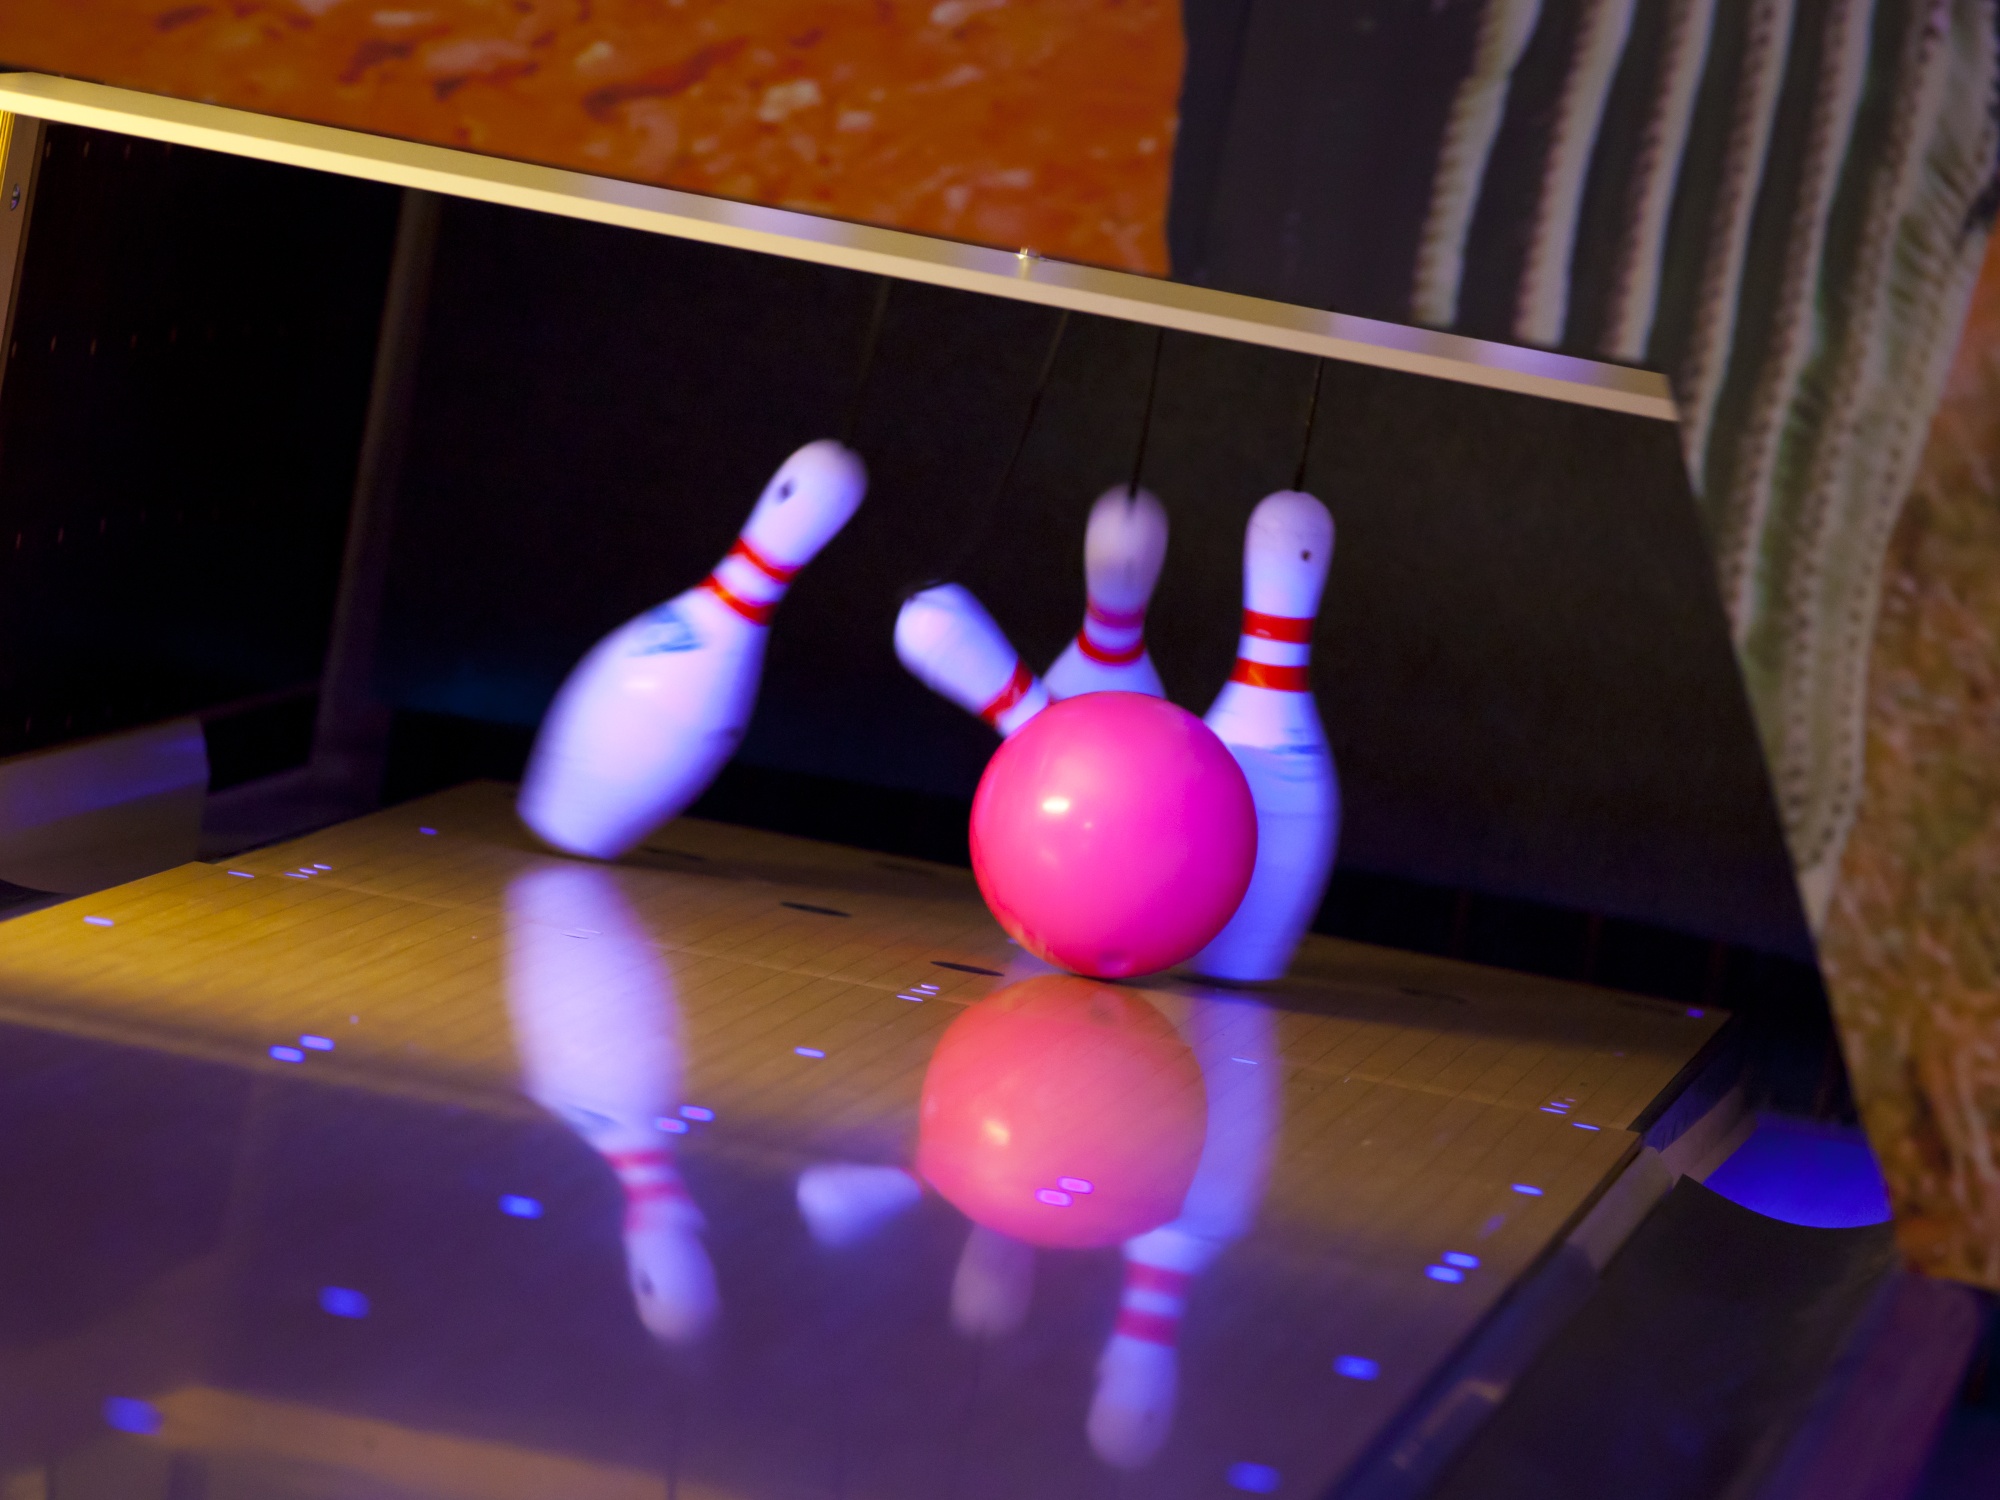 Vier weiße Bowling Pins mit zwei roten Streifen werden von einer roten Bowling Kugel getroffen und sind in der Momentaufnahme gerade am Fallen.